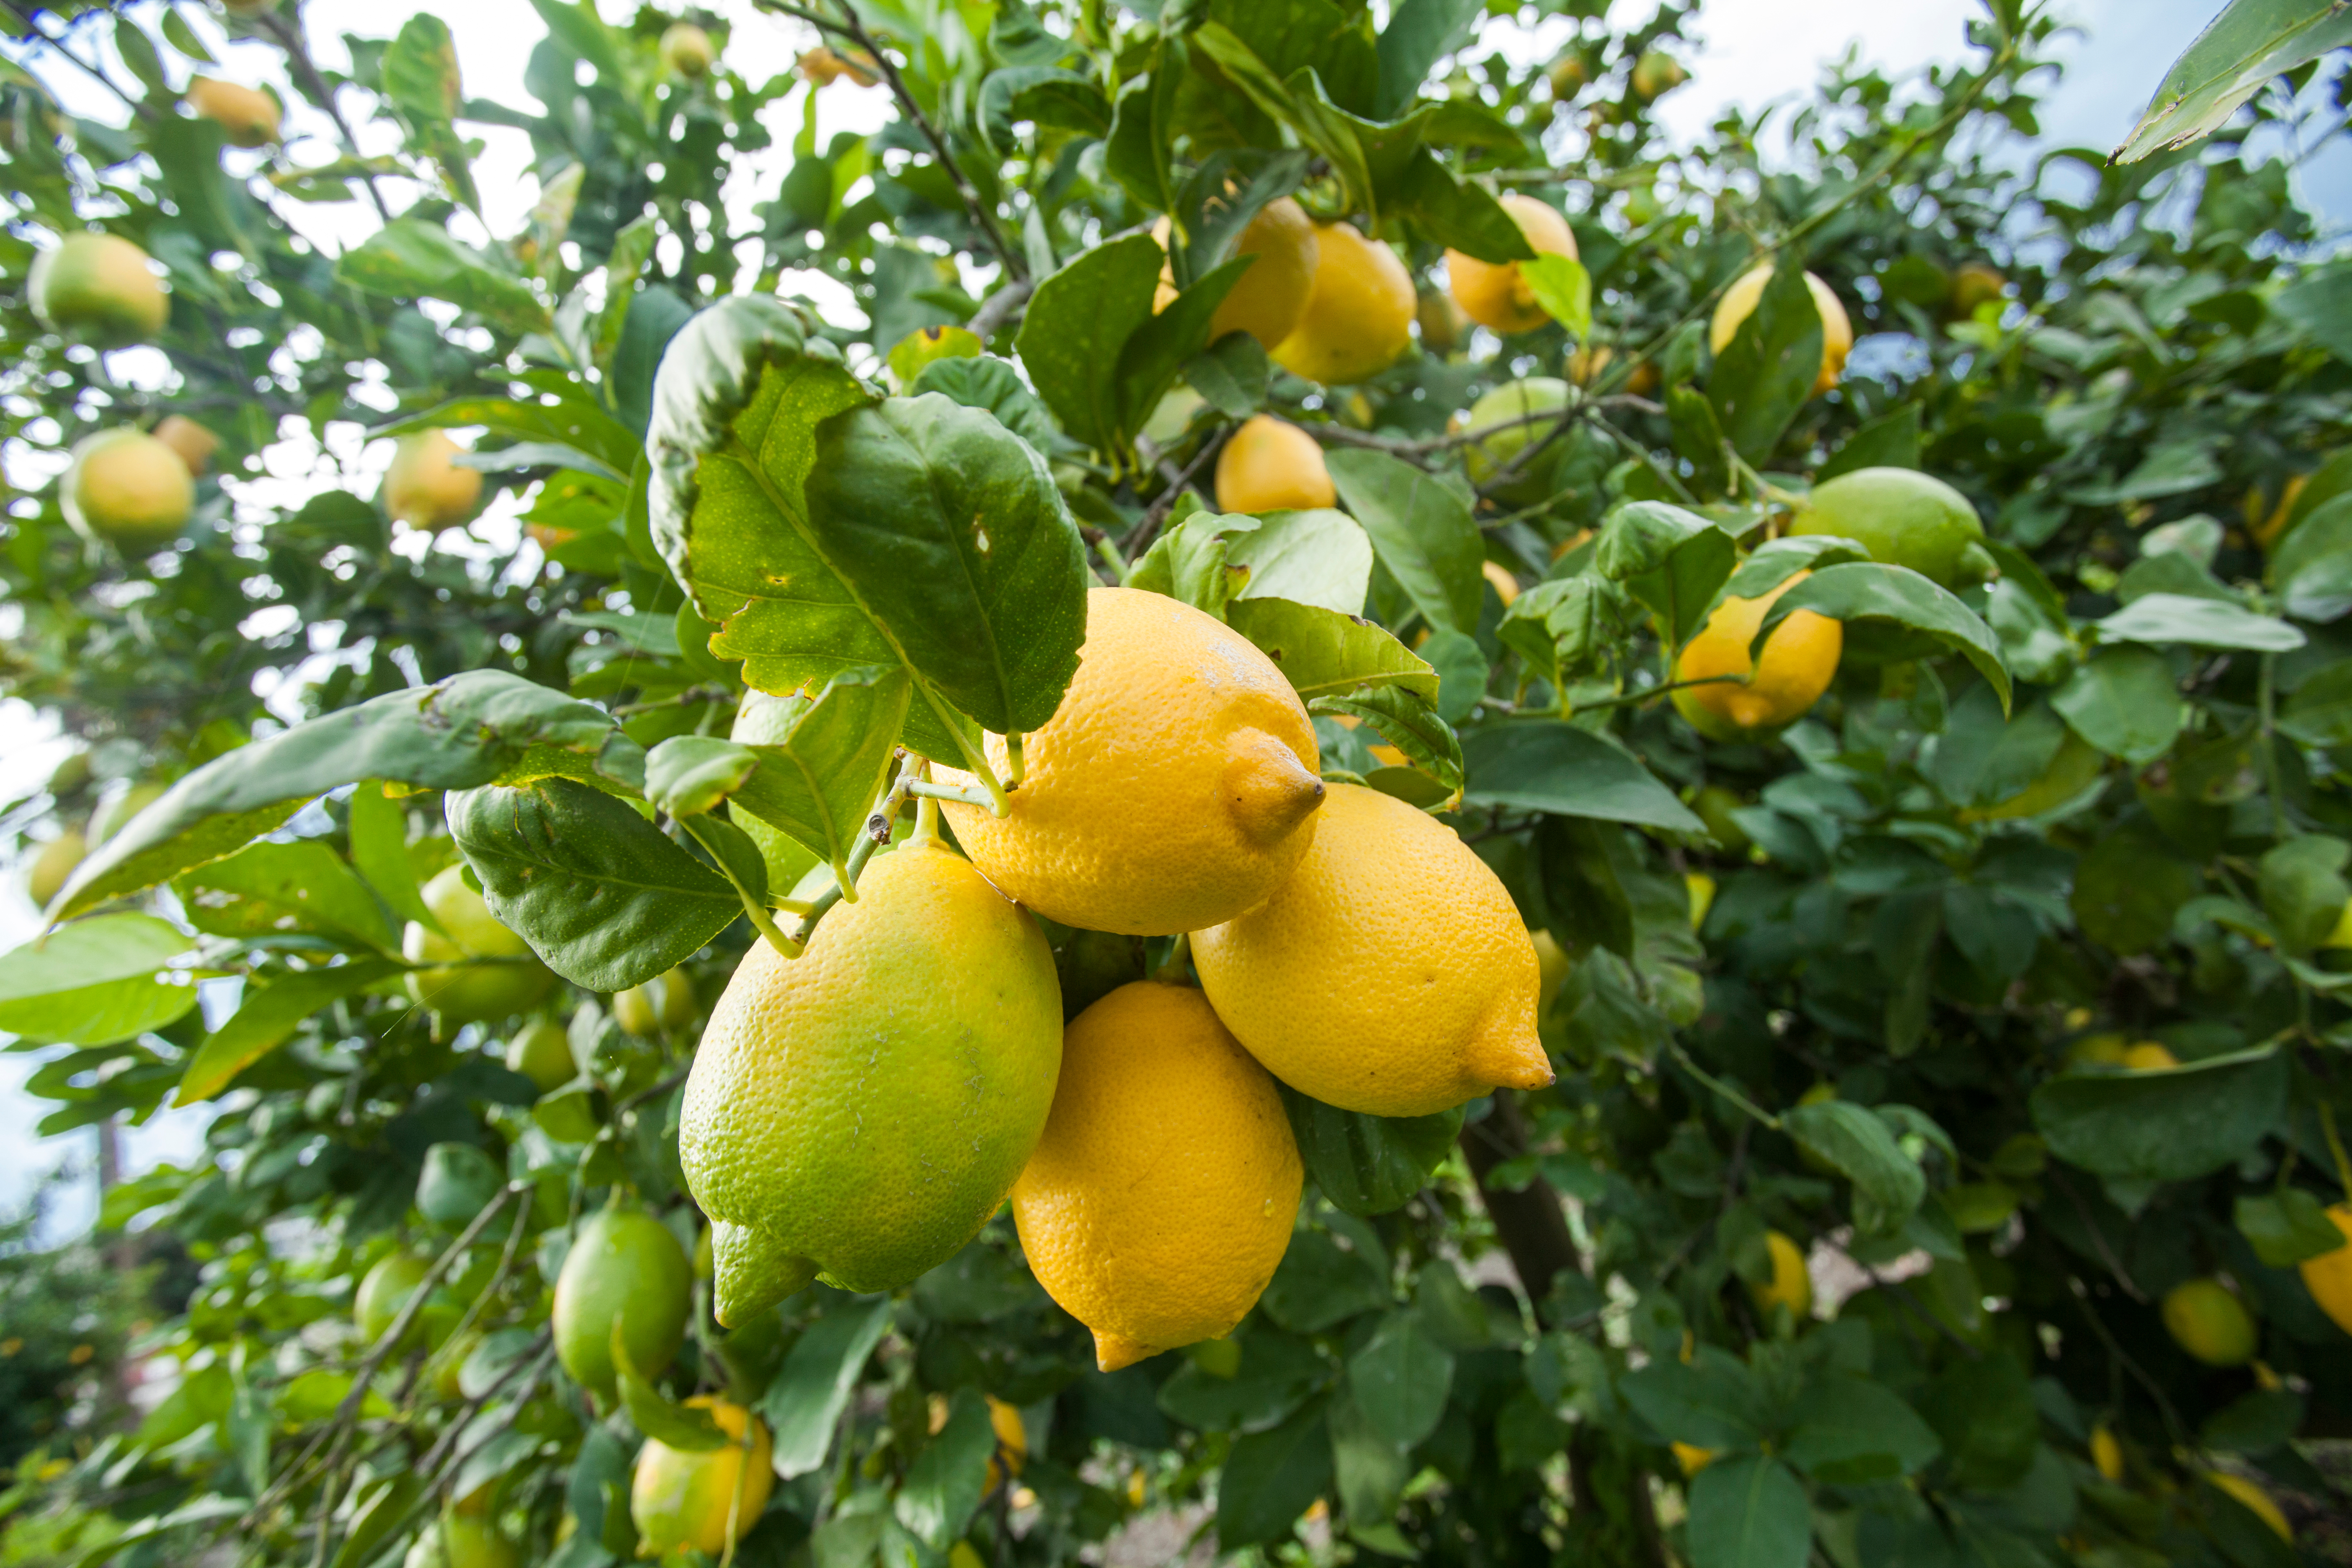 À la fois esthétique et productif, le citronnier fait partie des arbustes qui font la fierté des jardiniers. Copyright (c) 2020 ehasdemir/Shutterstock.